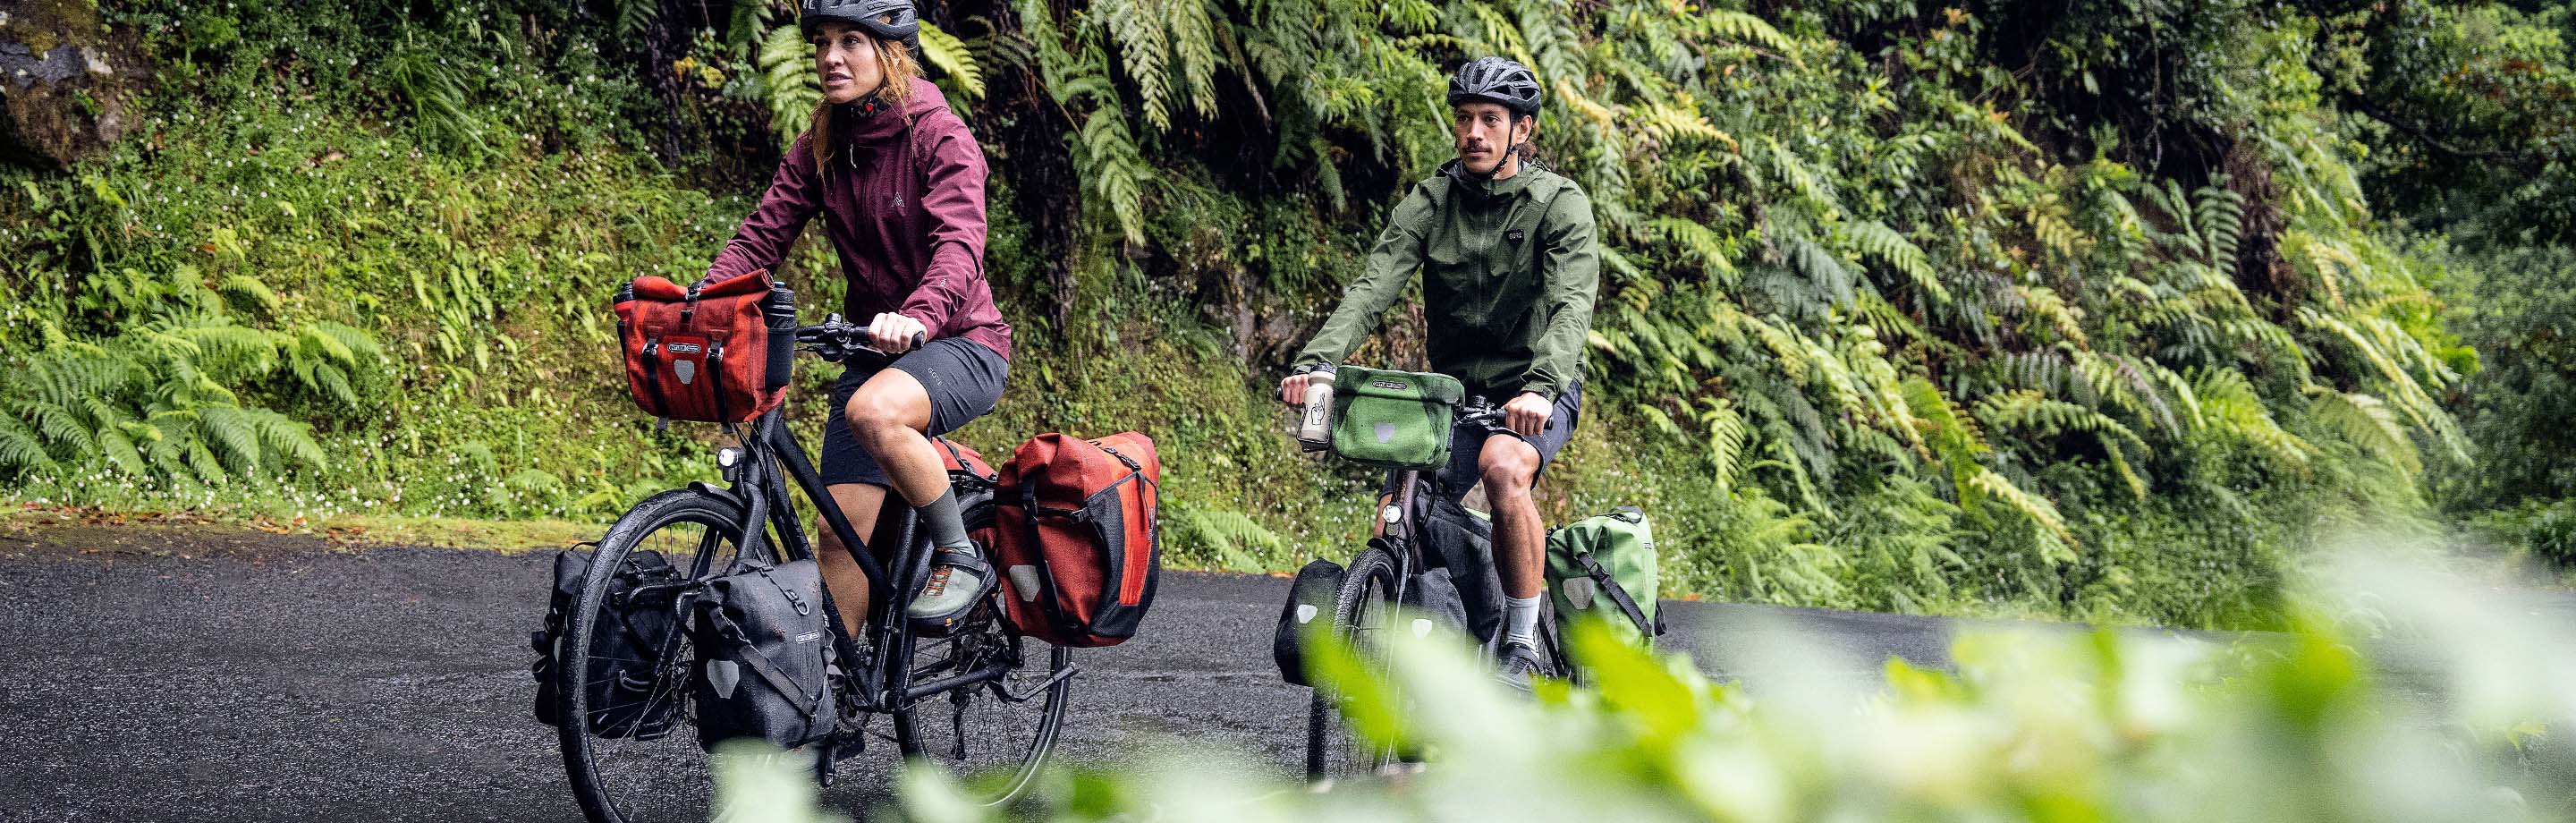 ORTLIEB – Reliable Waterproof Bike Bags, Backpacks & Panniers from Germany